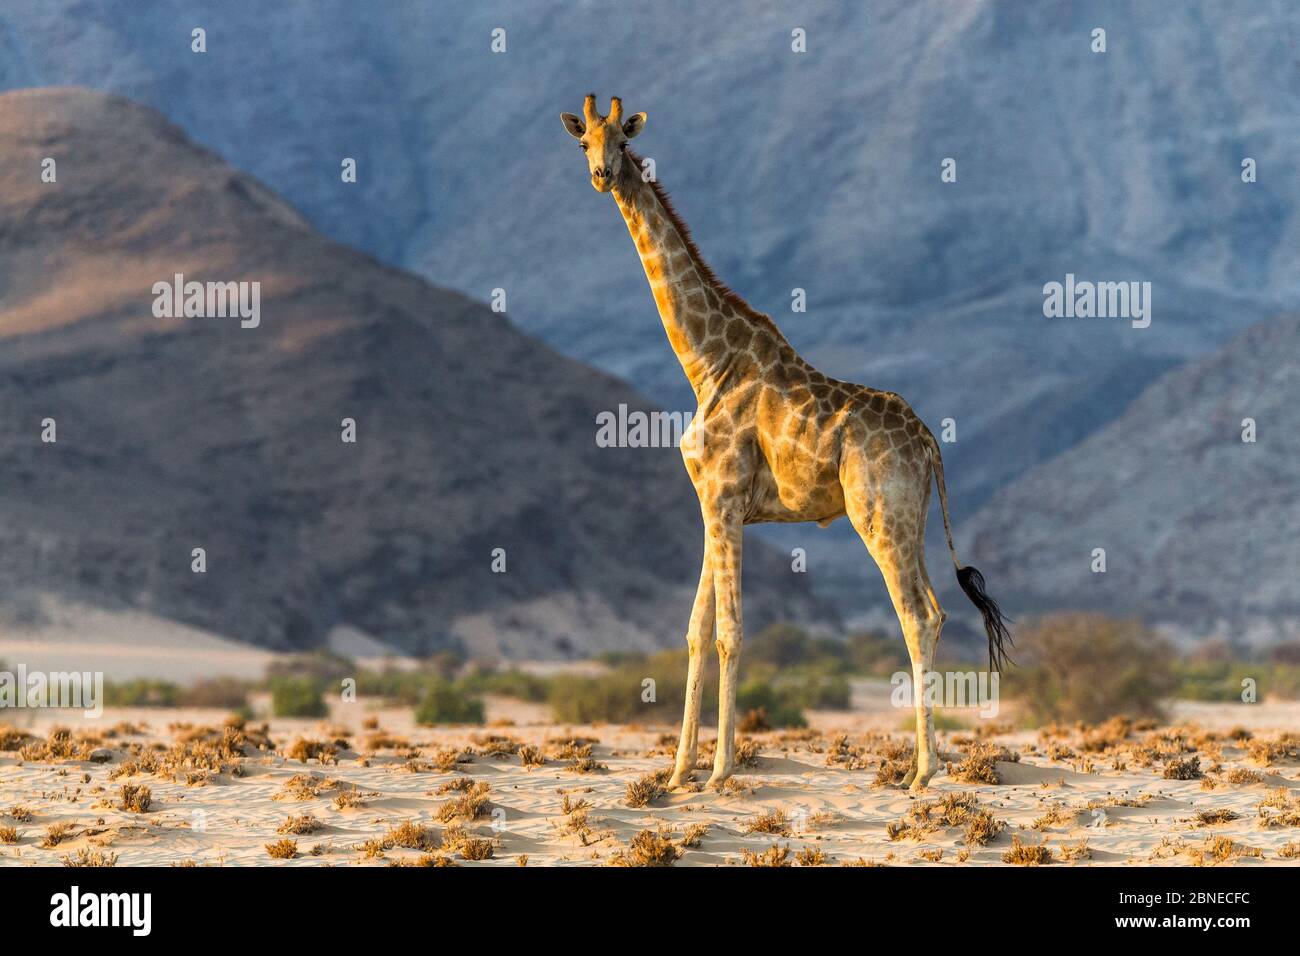 Giraffa reticolata (Giraffa camelopardalis), che abita la giraffa desertica a Damaraland, Namibia Foto Stock